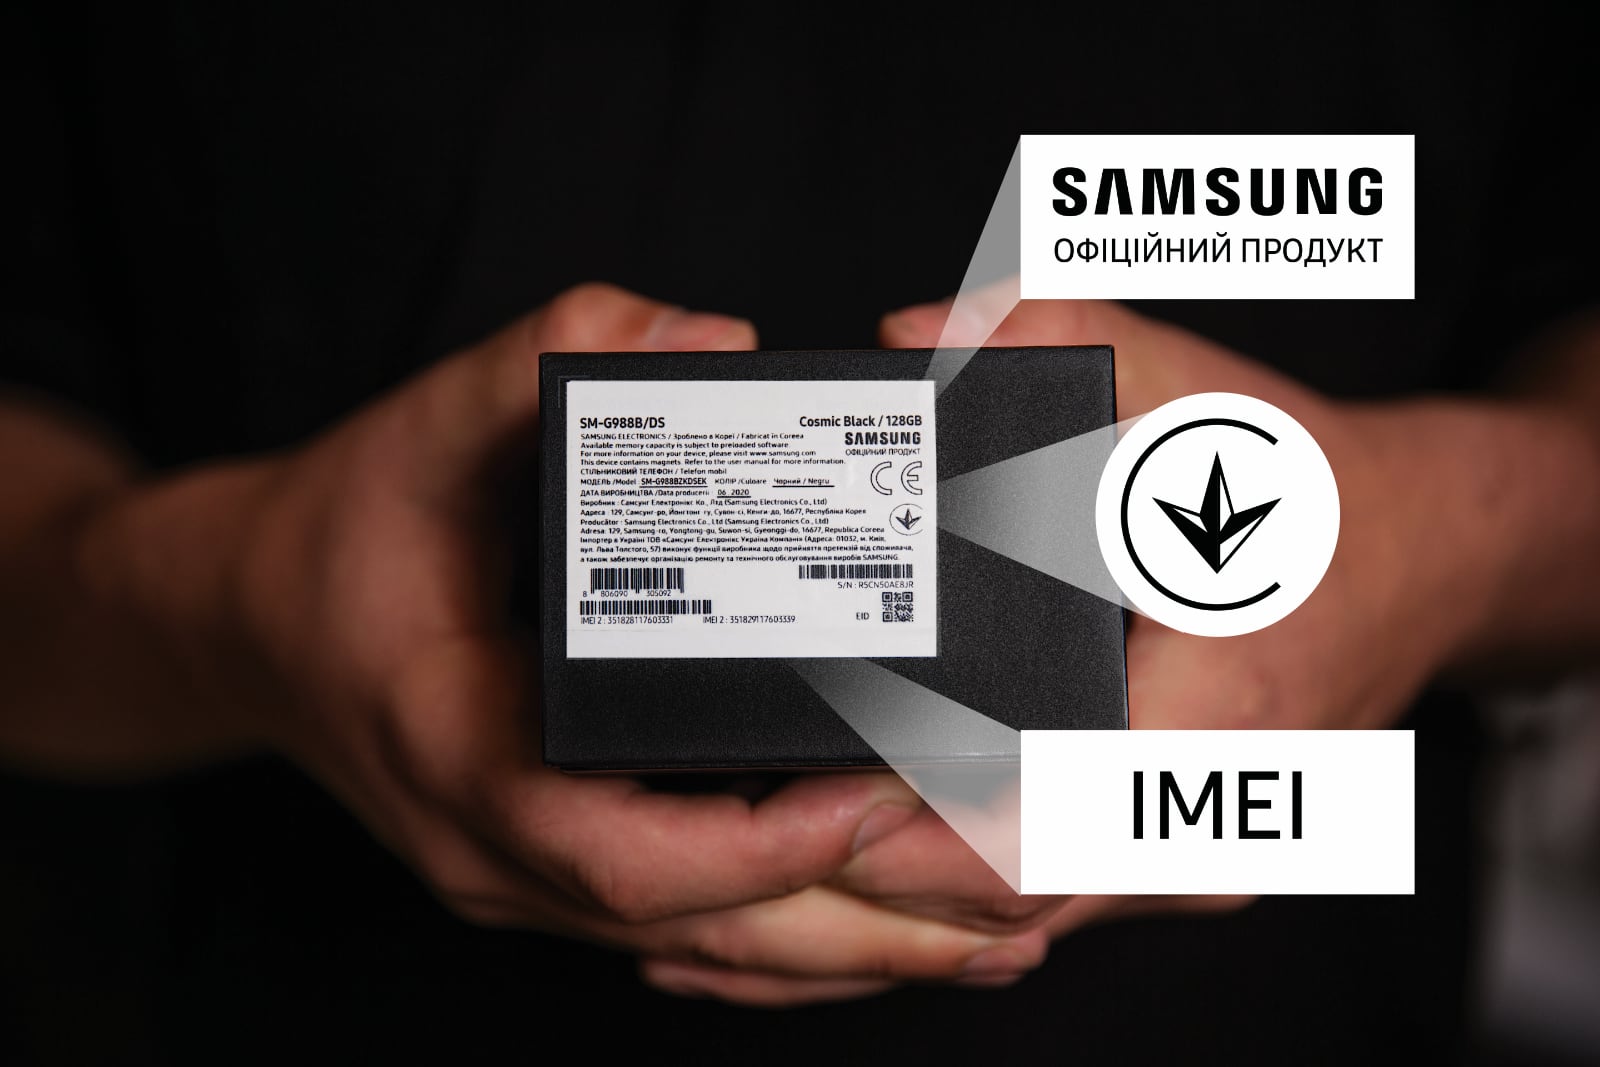 Samsung ricorda l'etichetta facilmente riconoscibile dei suoi smartphone sulla confezione